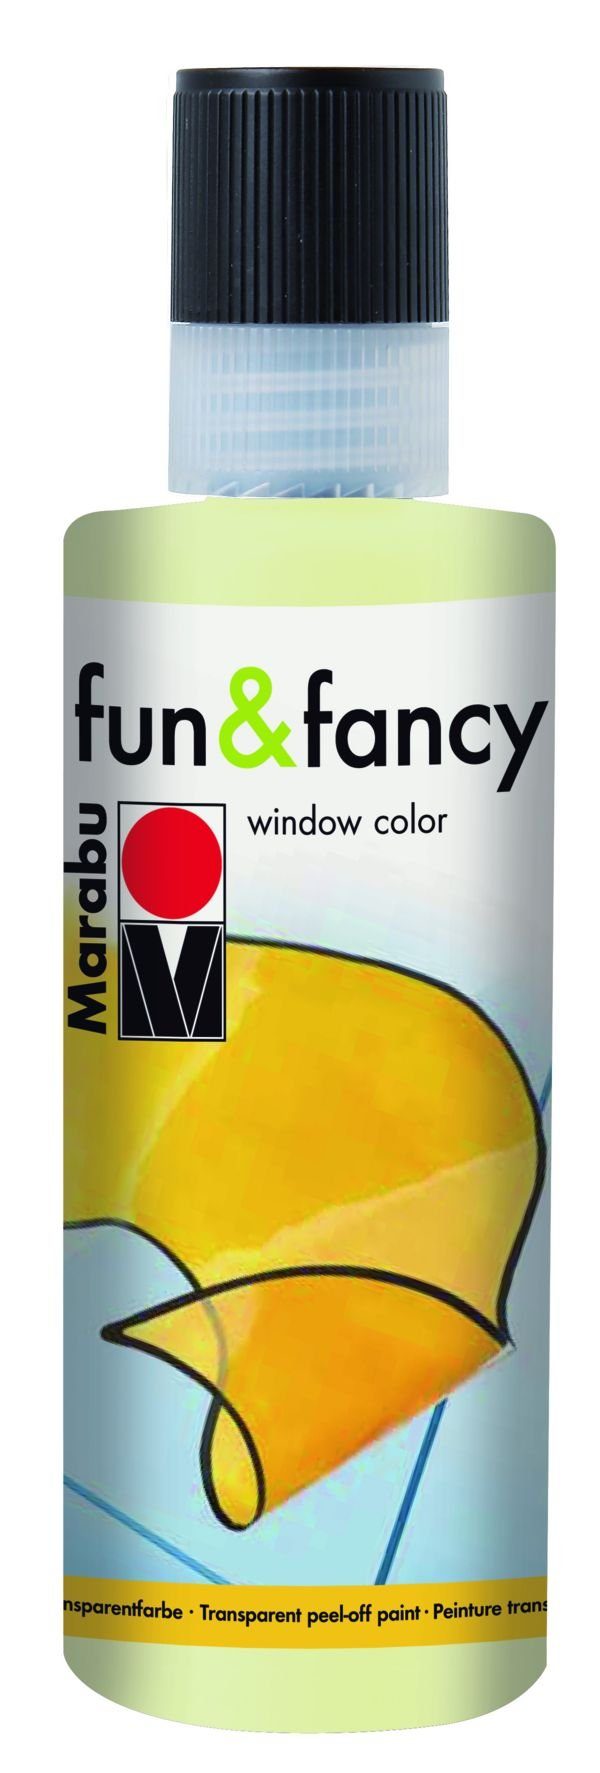 Marabu Kugelschreiber Window Color fun&fancy - Nachleucht-Gelb 872, 80